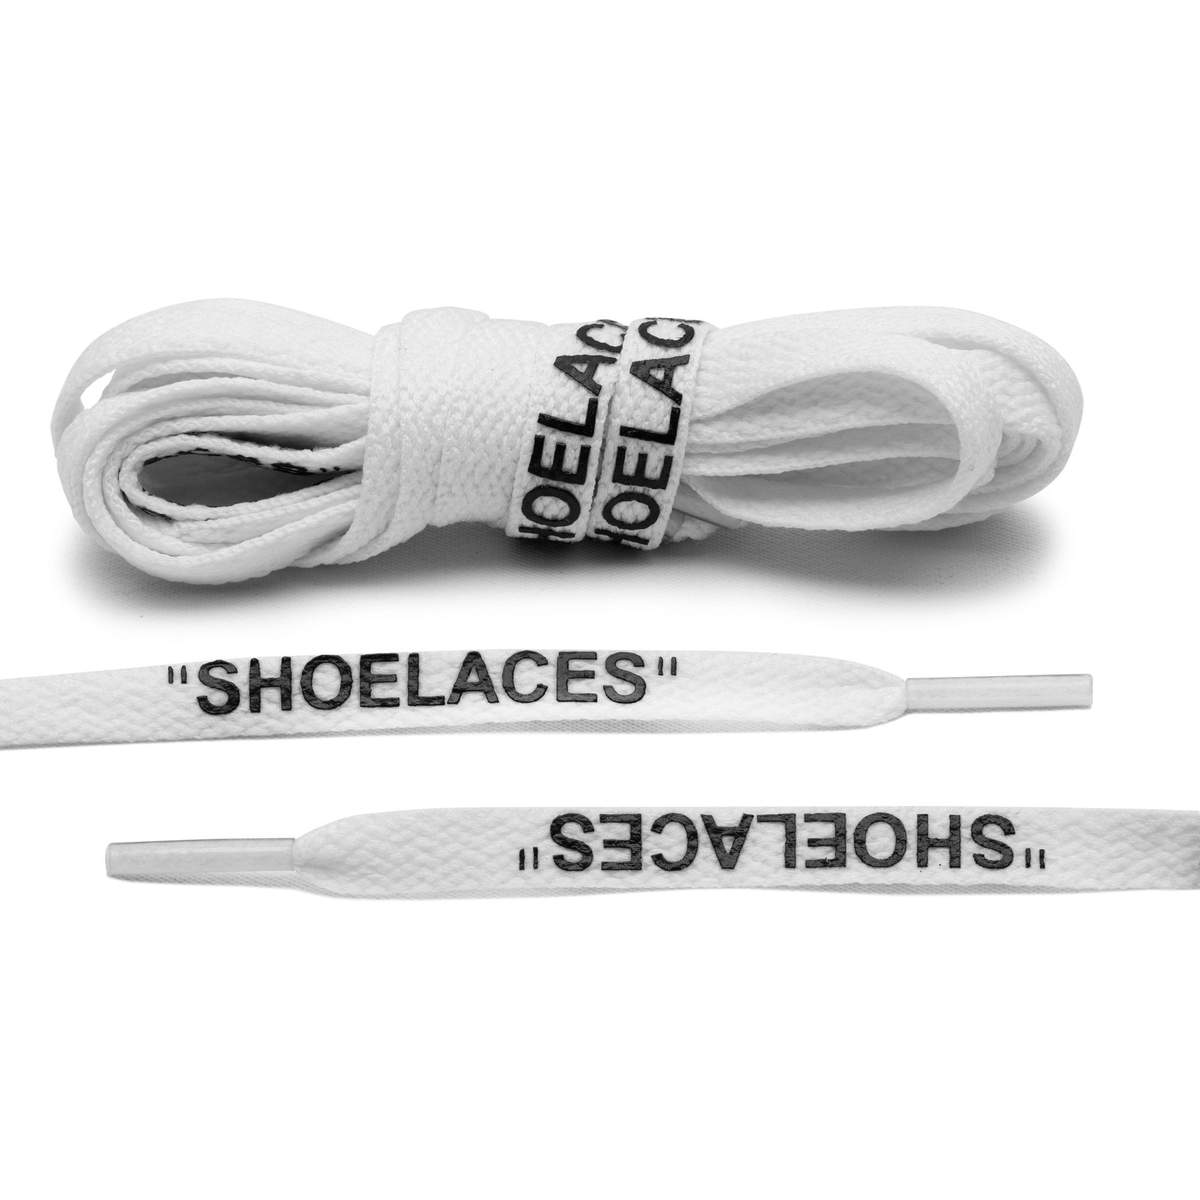 OFF WHITE "shoelaces" white